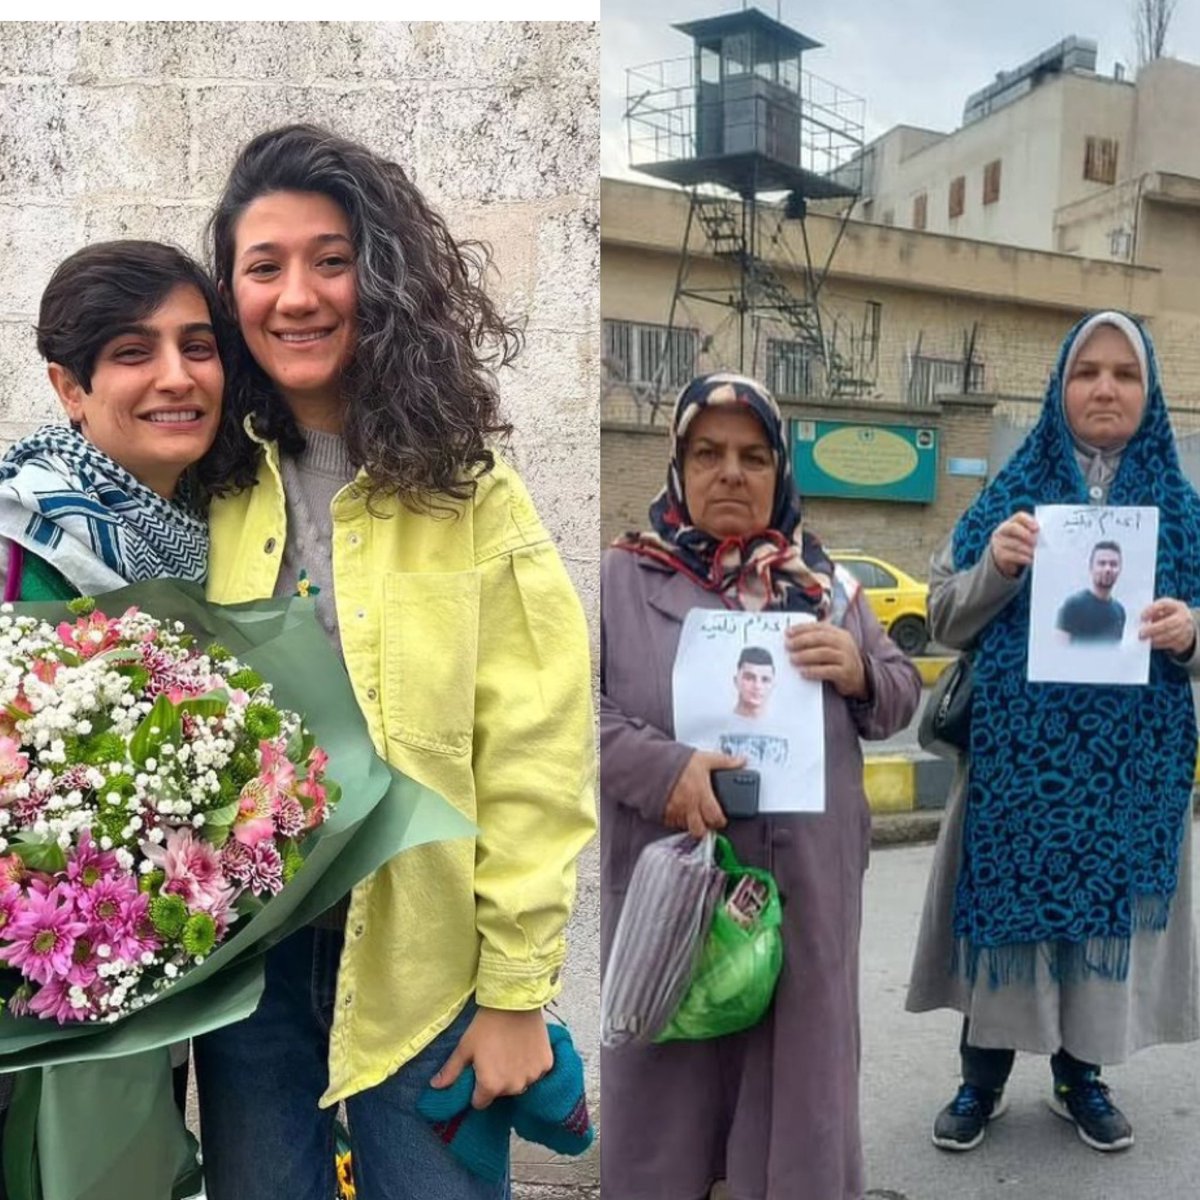 هر دو تصویر برای امروز ۲۴ دی مقابل زندان اوین است. الهه محمدی و نیلوفر حامدی عزیز پس از ماه ها بلاتکلیفی موقتا از زندان آزاد شدند و خانواده ۴زندانی سیاسی کرد در مقابل اوین در اعتراض به حکم #اعدام عزیزانشان تجمع کردند… #زن_زندگى_آزادى